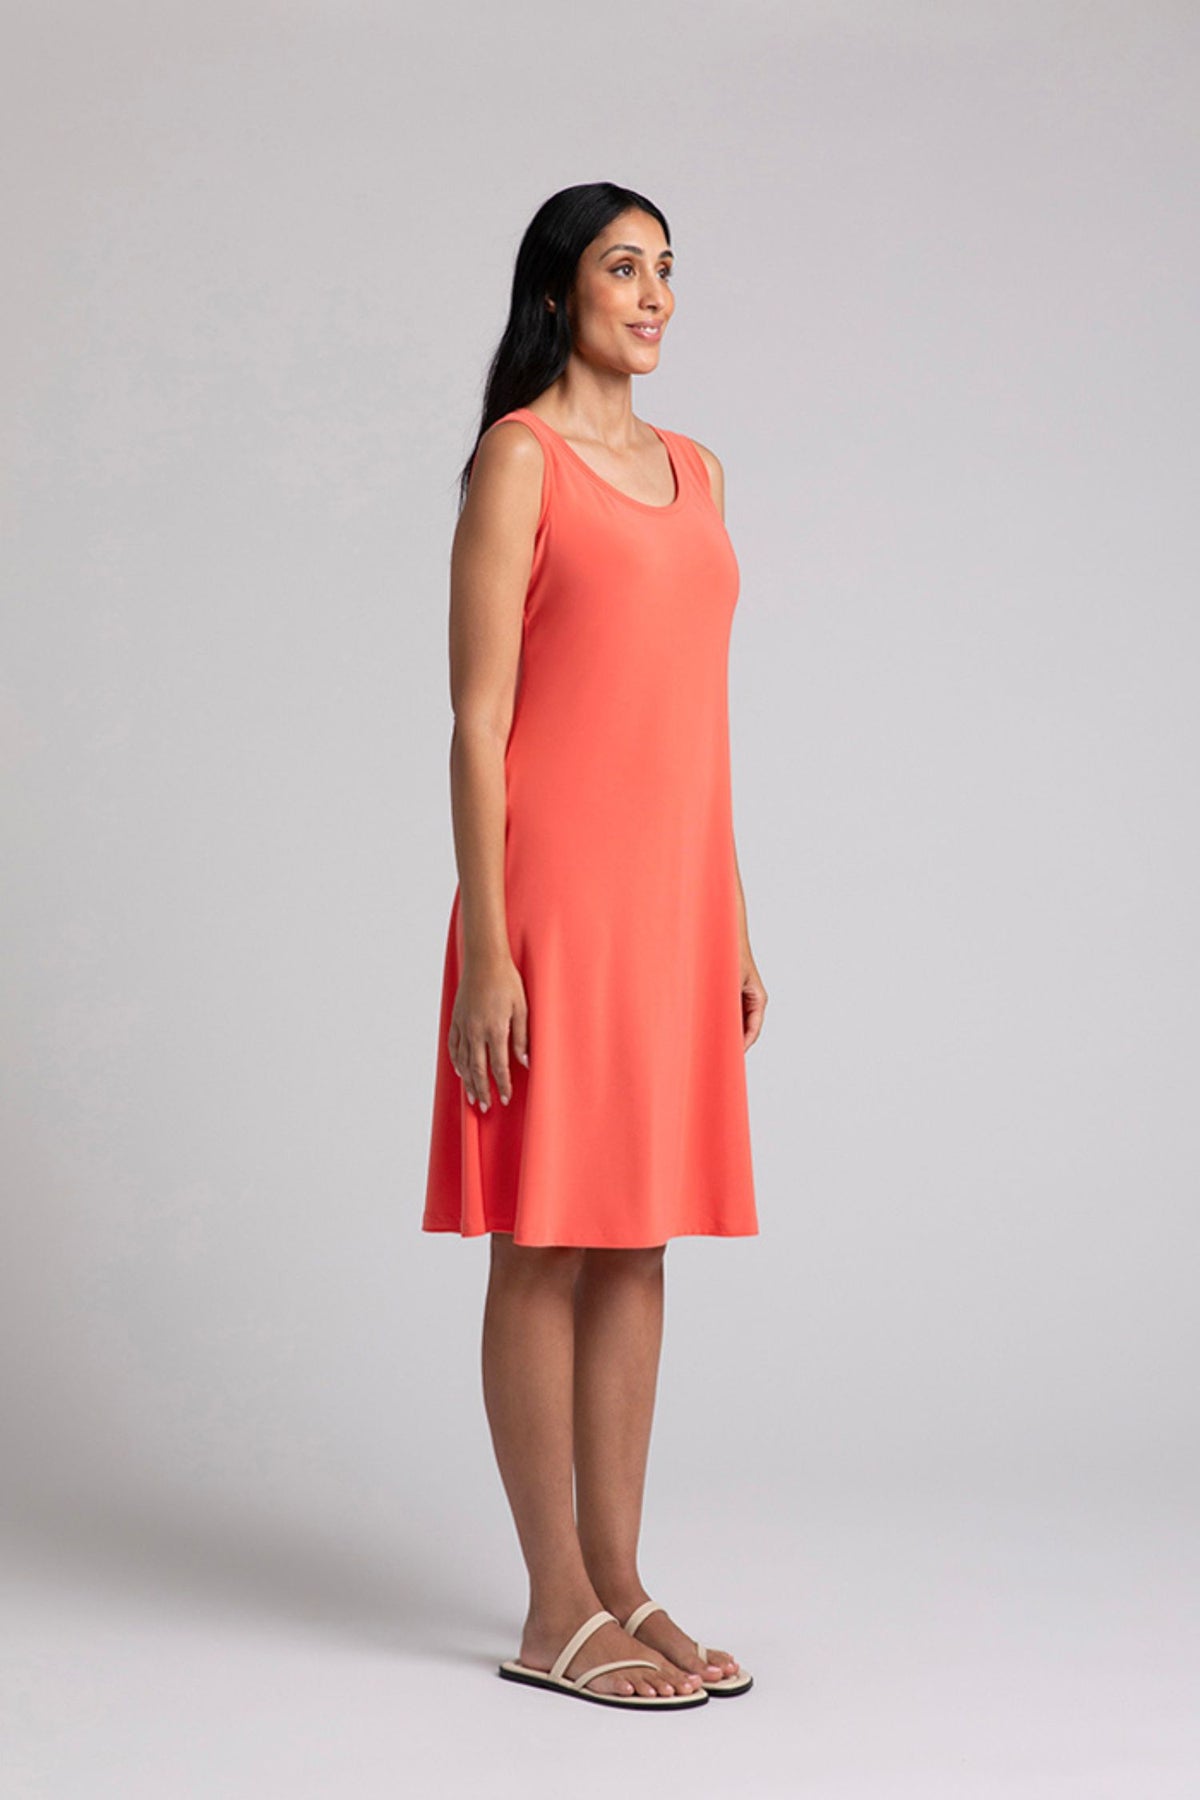 Sympli Nu Tank Dress - Style 28176, side, coral